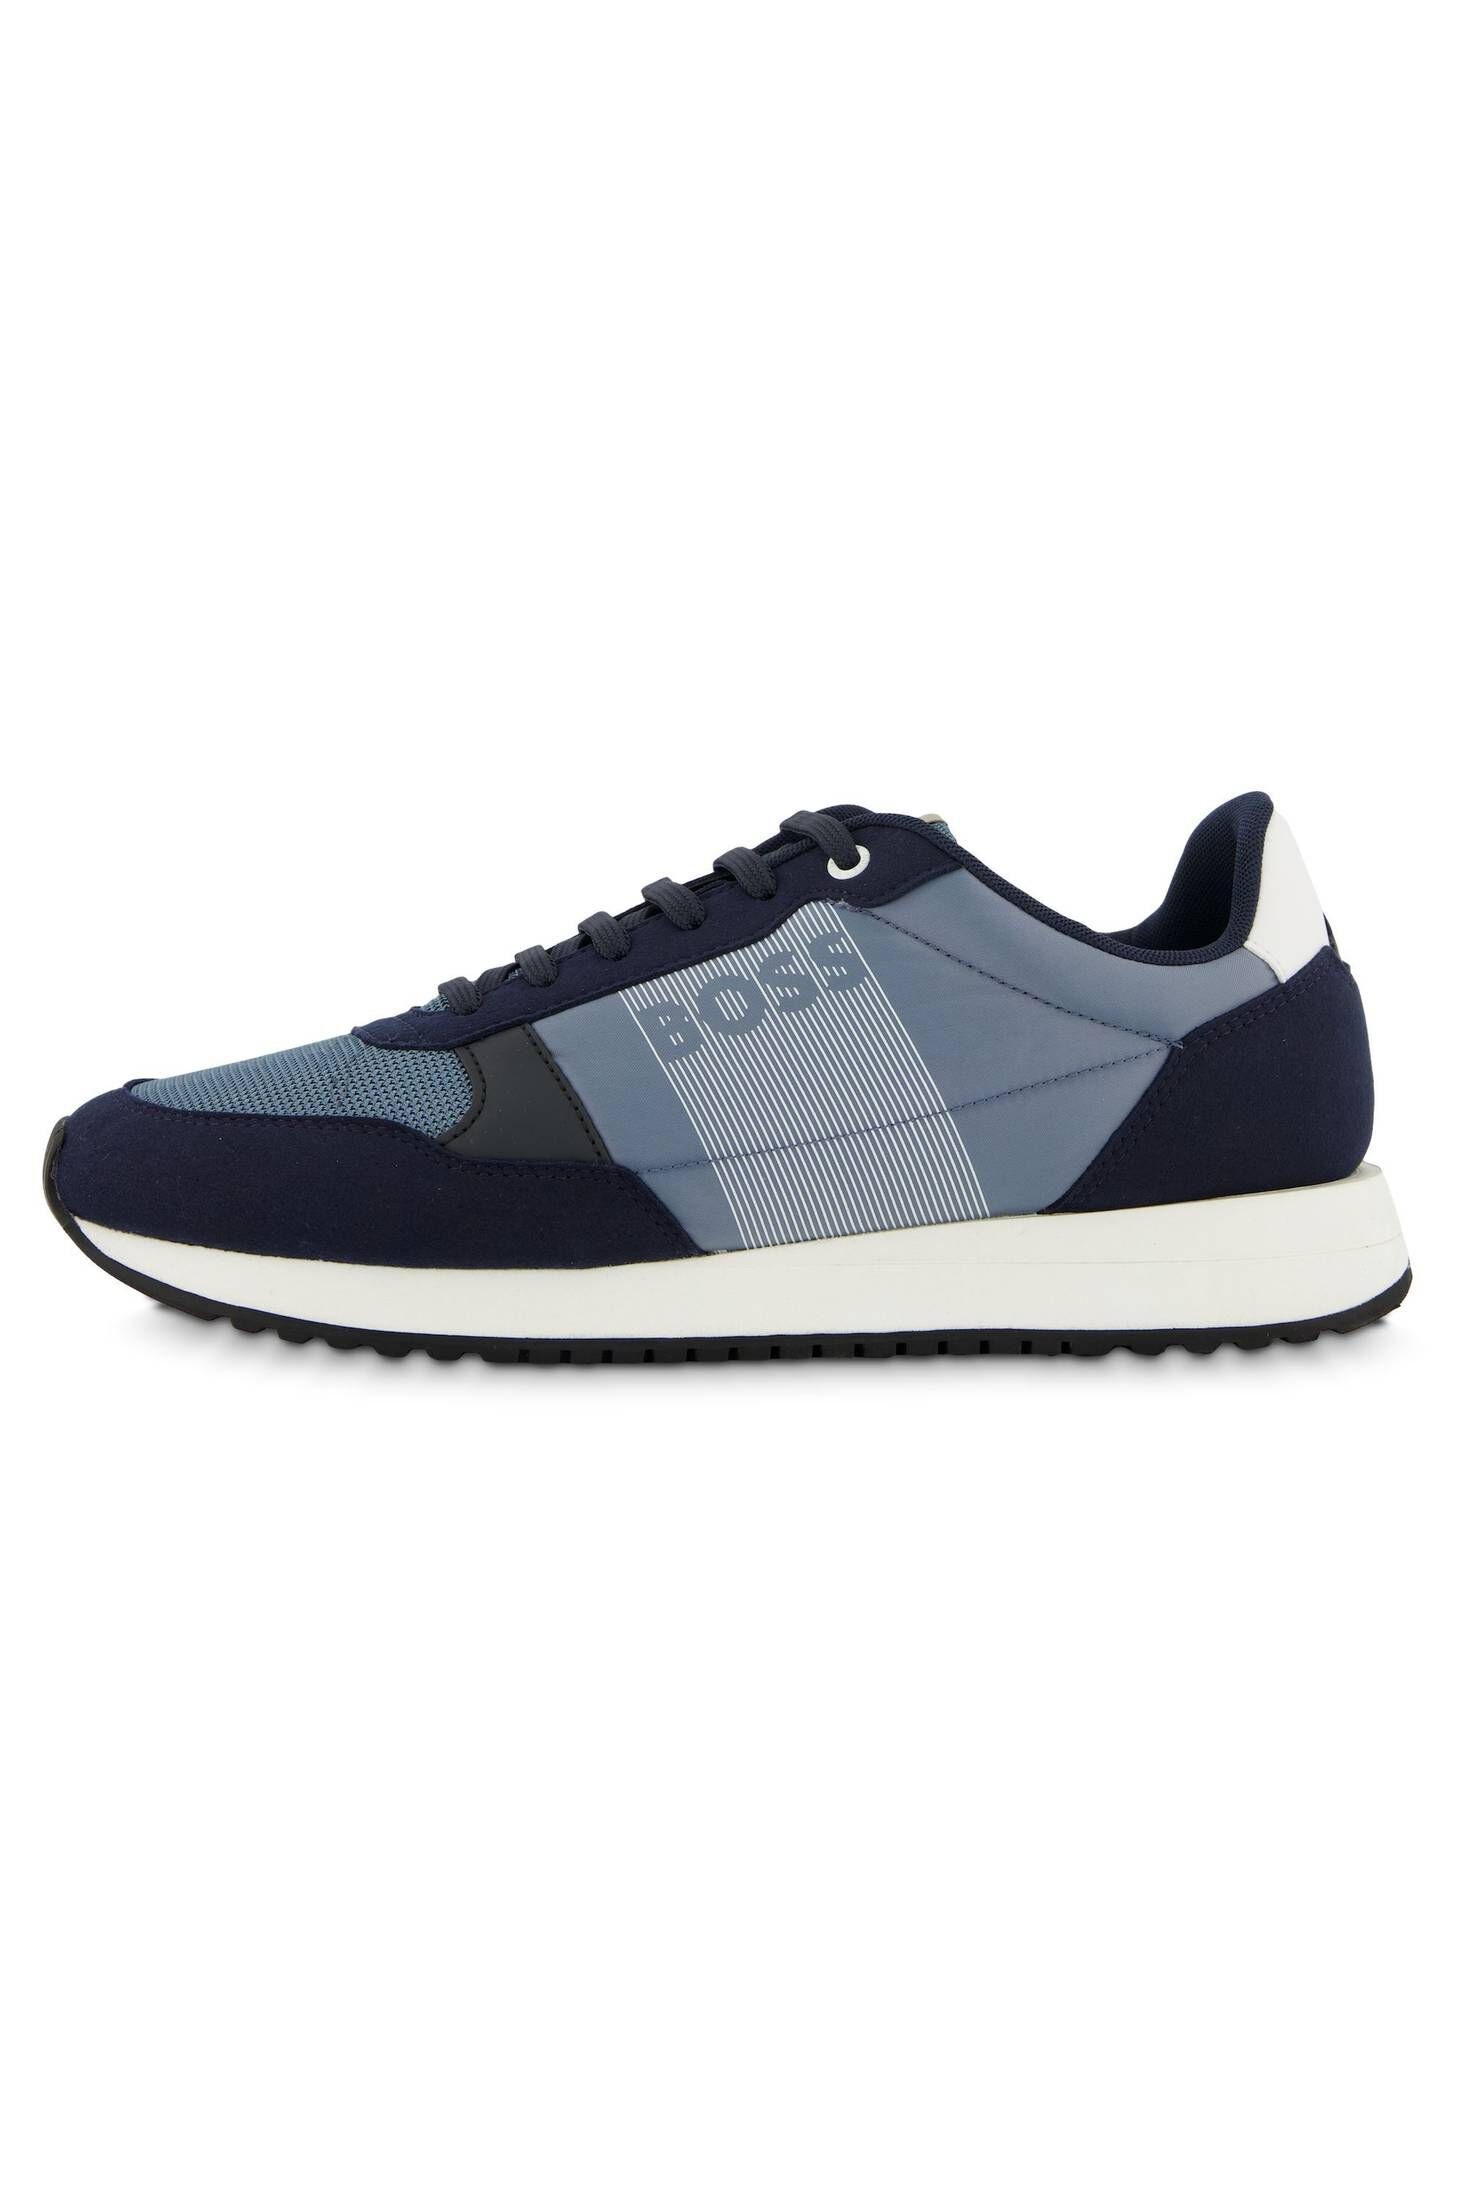 HUGO BOSS Herren Sneaker KAI RUNN MXPR Sneaker stoned blue (81)